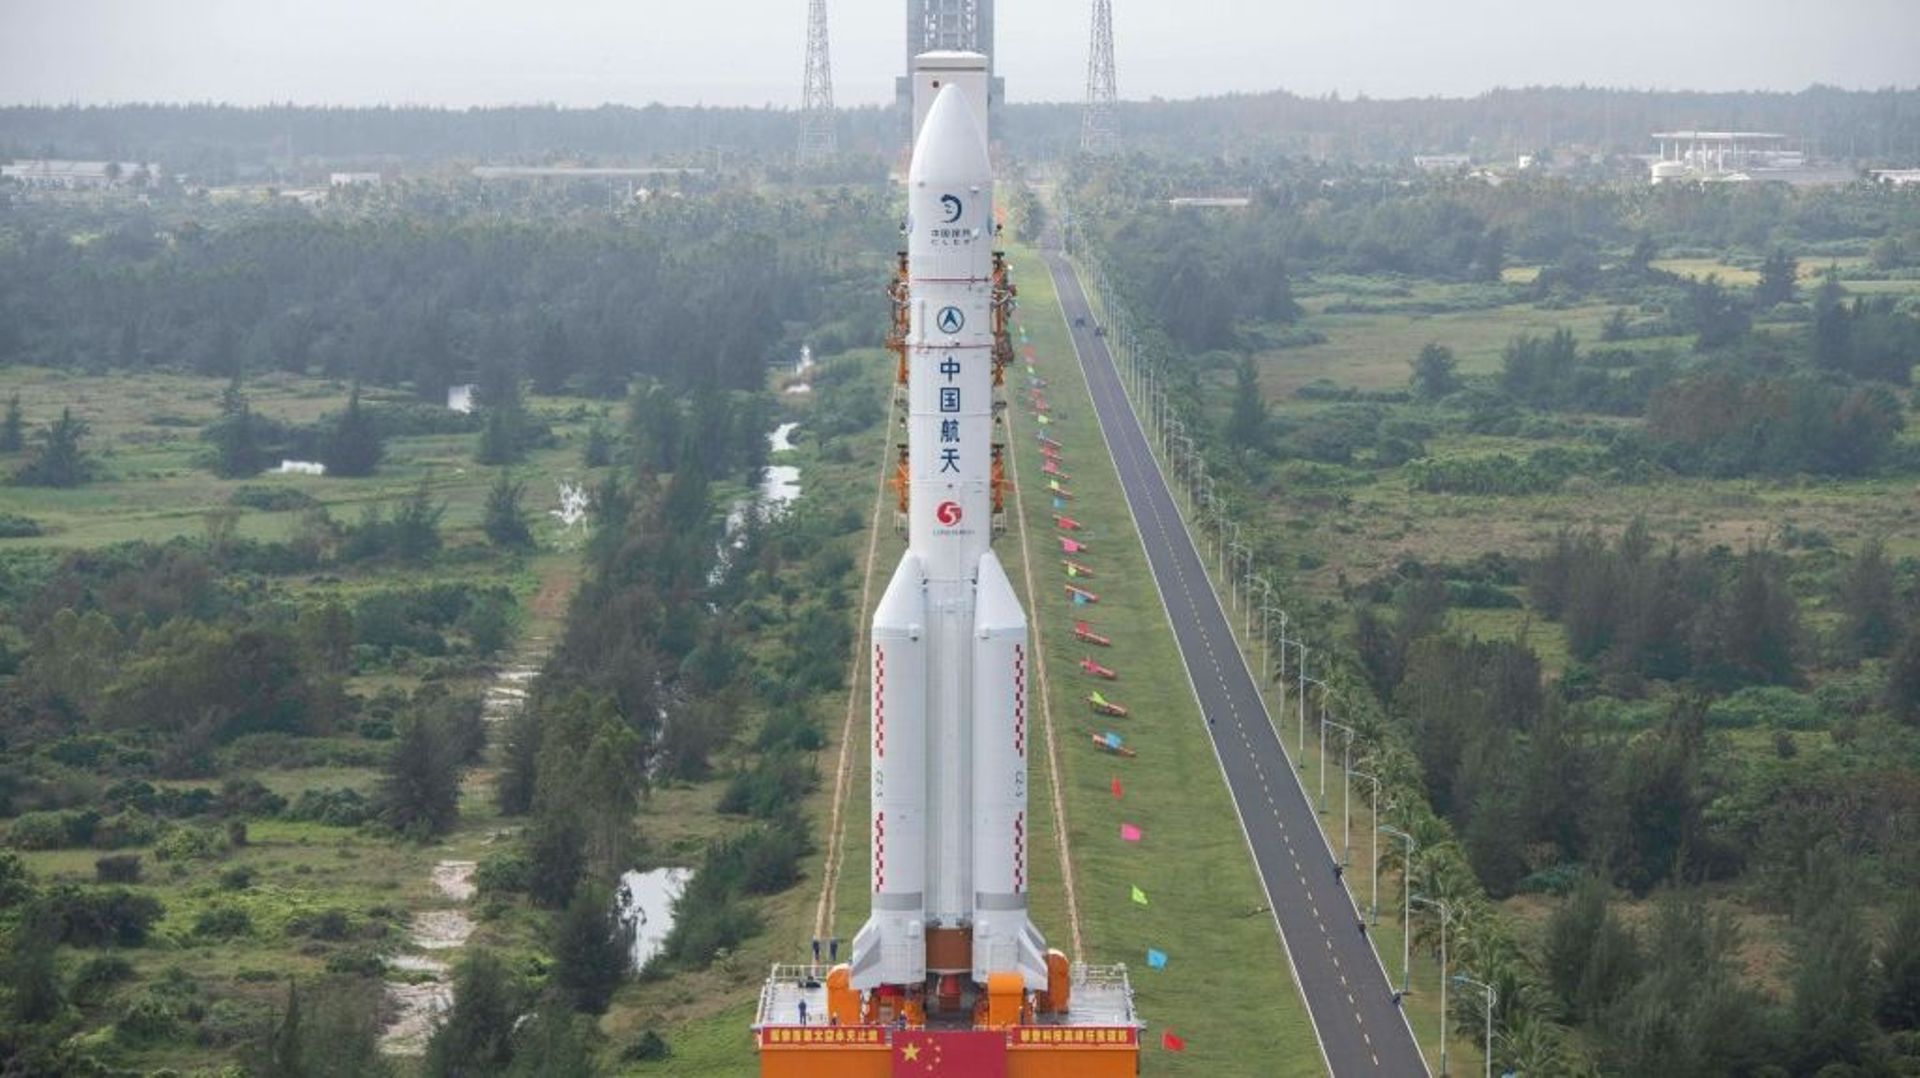 Une fusée Longue-Marche 5, qui va lancer la sonde lunaire Chang'e 5, transportée vers son pas de tir à Wenchang, sur l'île de Hainan, le 17 novembre 2020 dans le sud de la Chine